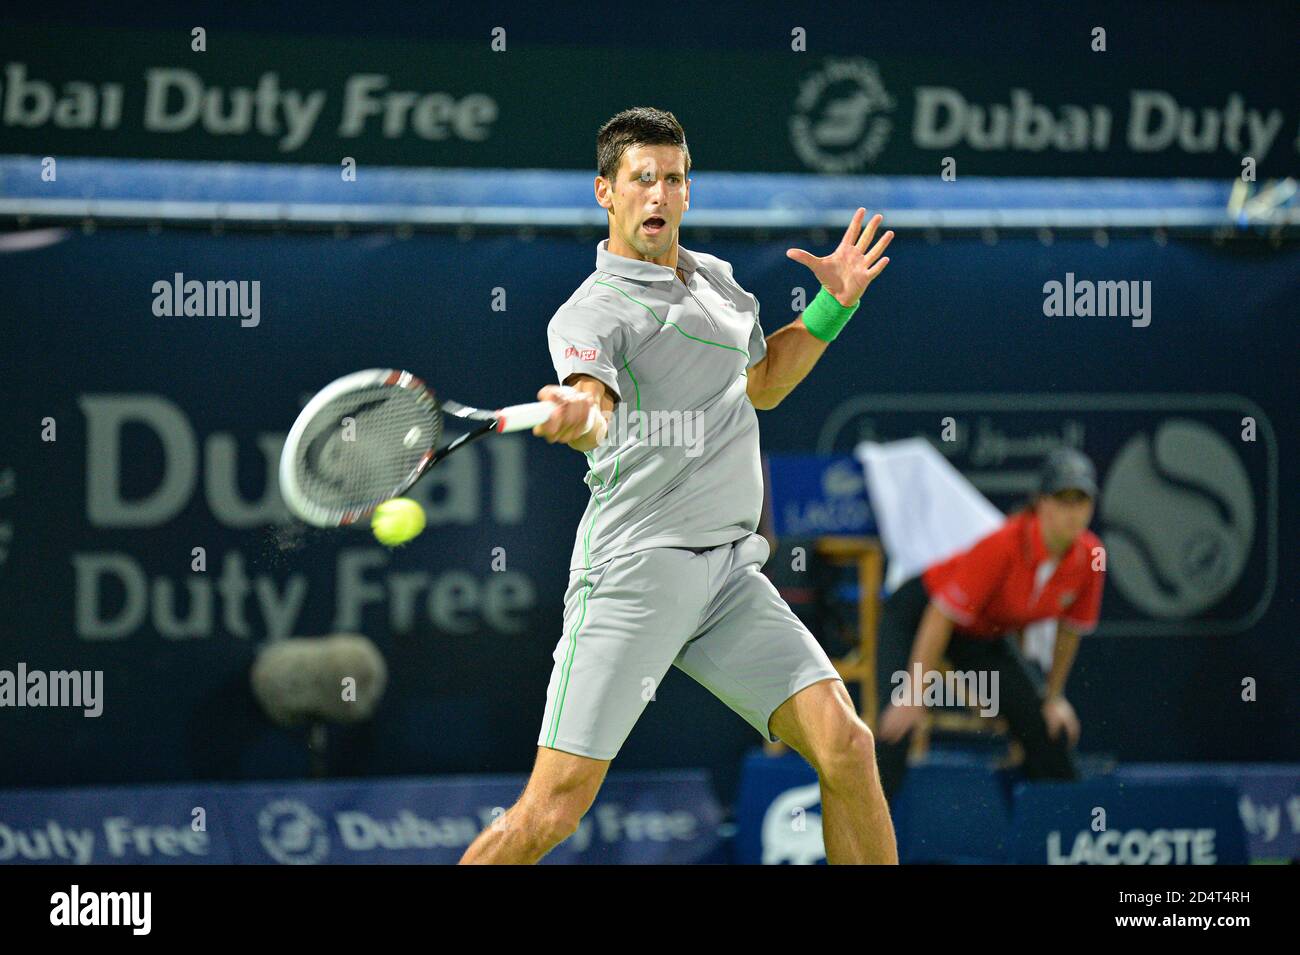 DUBAI, Emirati Arabi Uniti, 27 febbraio 2014. Novak Djokovic gioca una fronte contro Roger Federer nelle semifinali del Dubai Duty Free Tennis Championships. FEDER Foto Stock